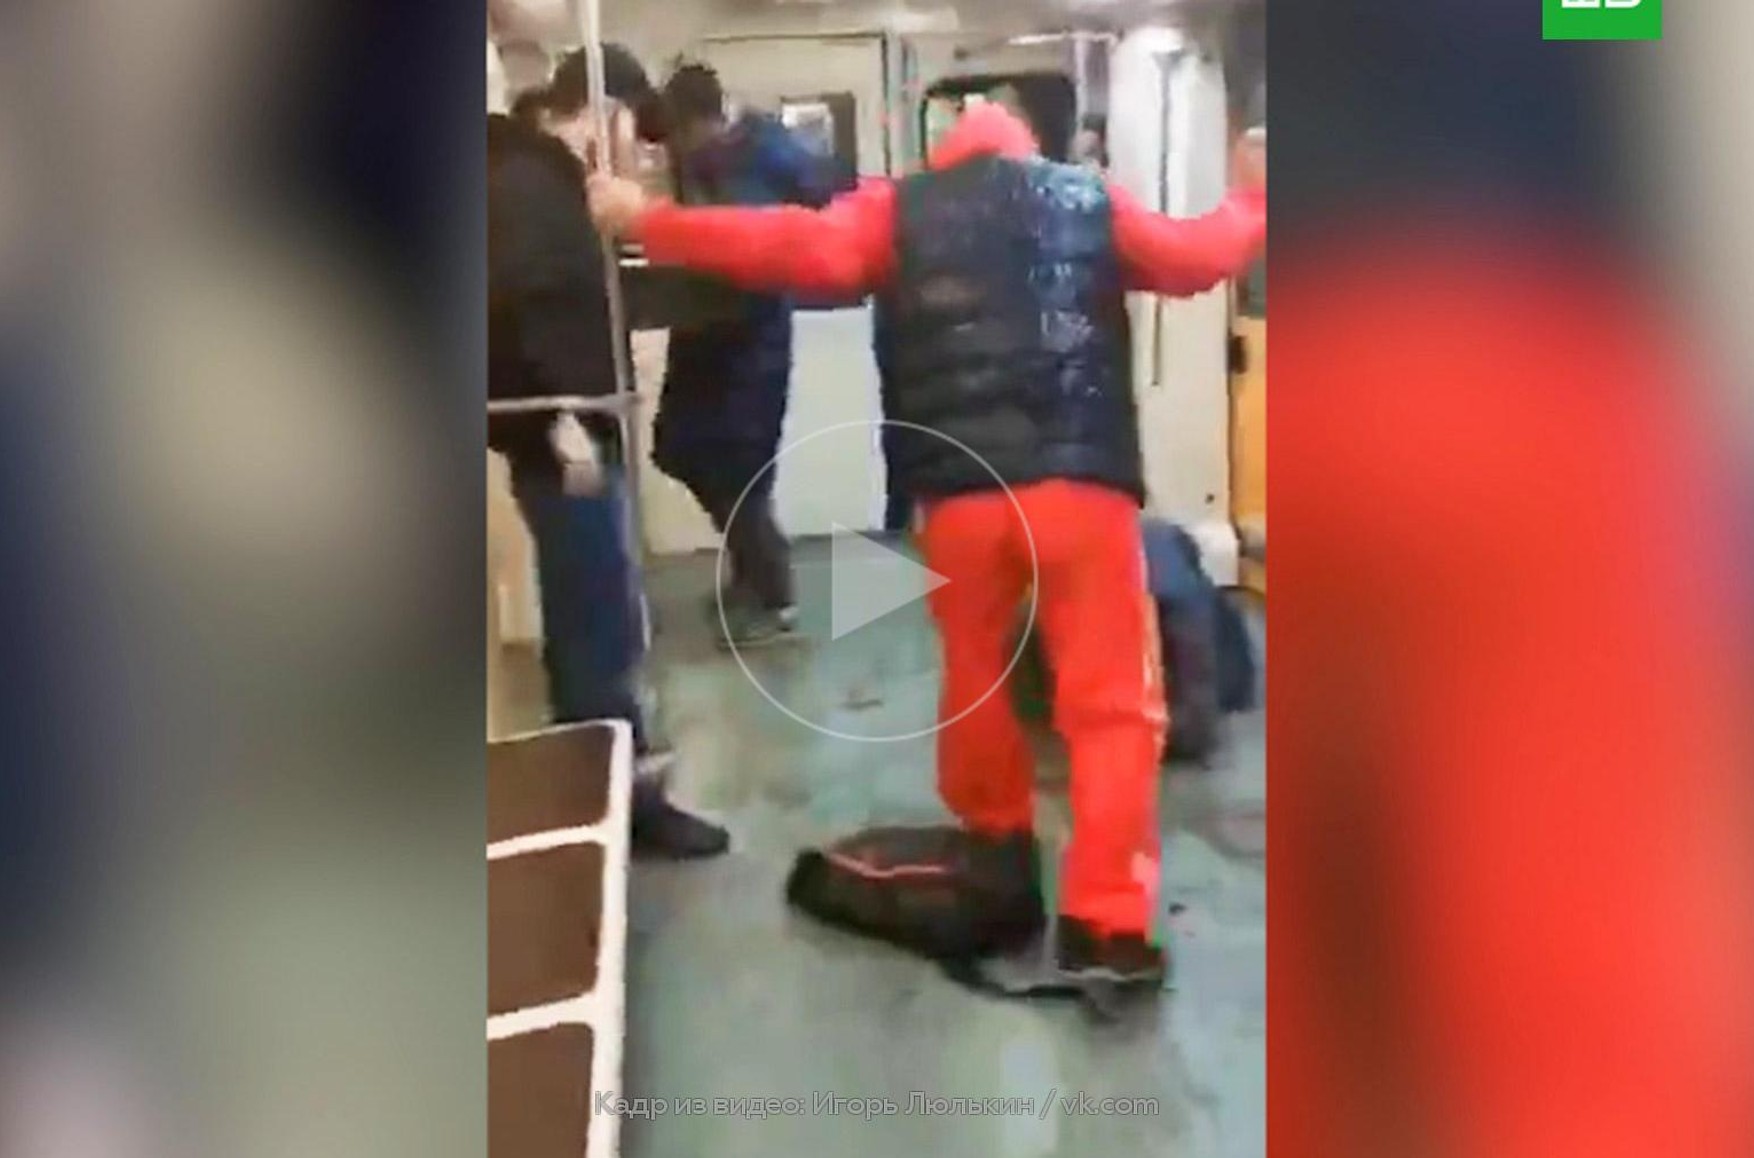 СК нагородить жінку, яка викликала поліцію під час бійки в московському метро